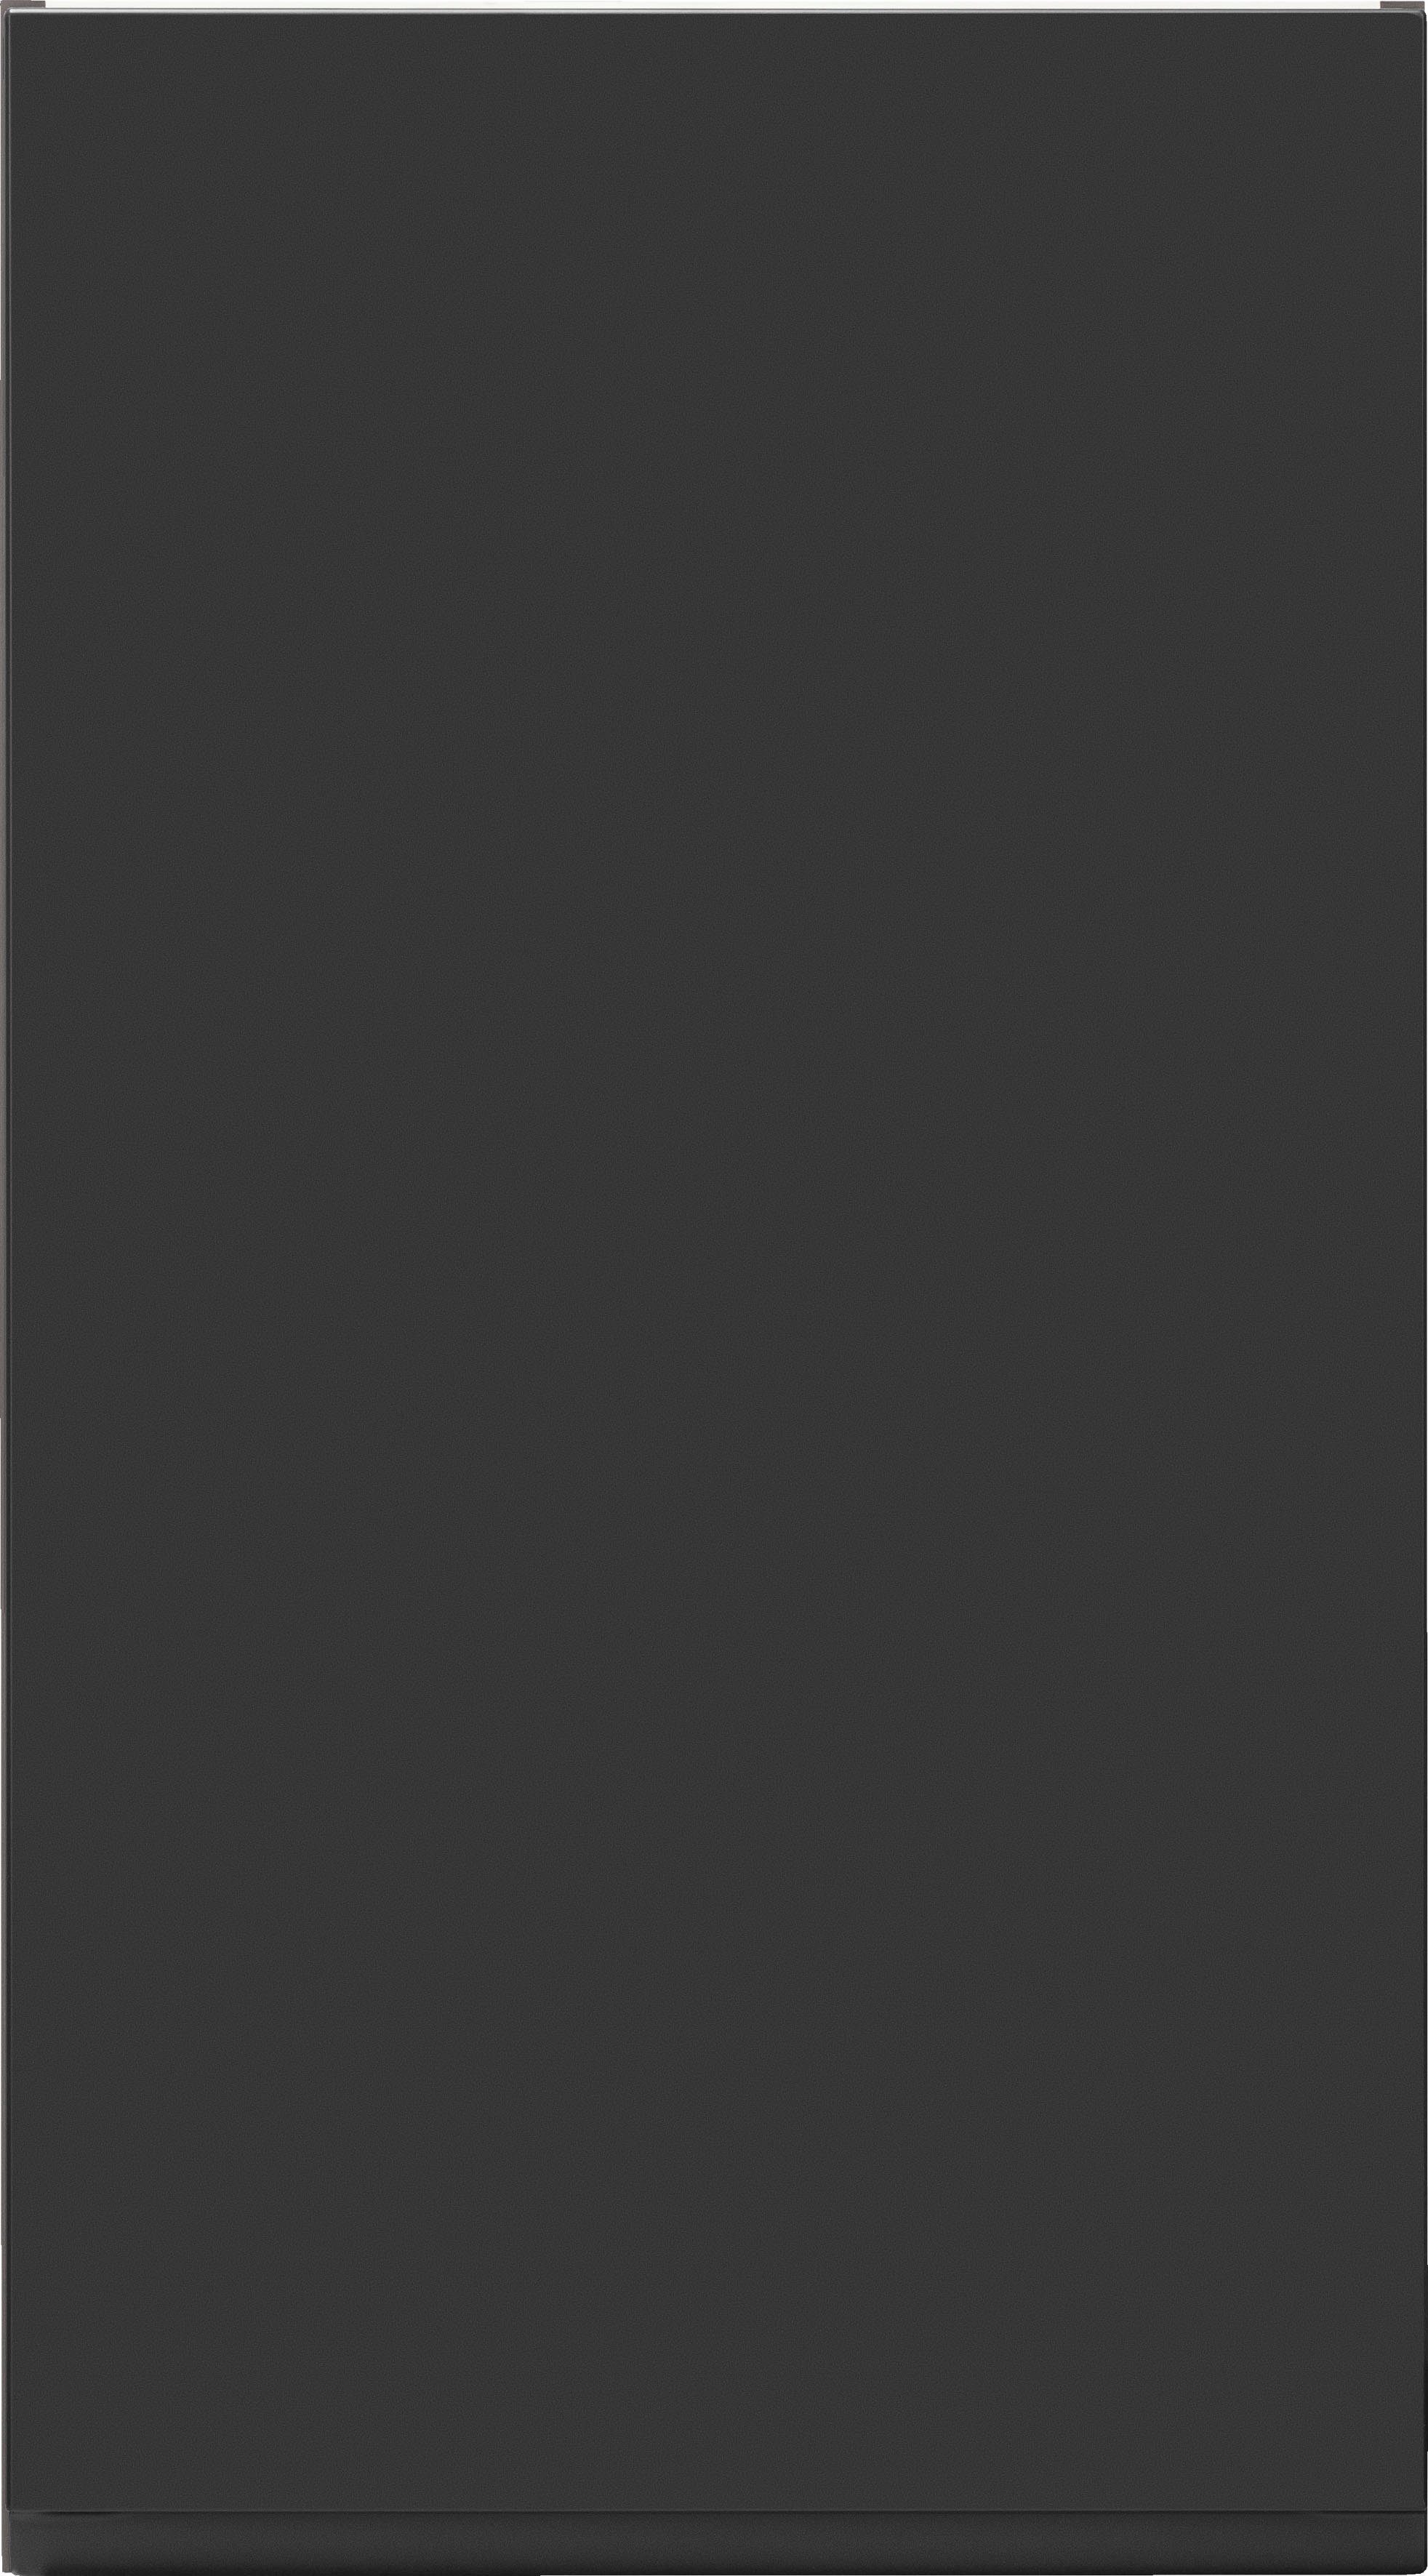 HELD MÖBEL Hängeschrank 60 cm | breit, viel >>Bruneck<< Bruneck MDF-Fronten hochwertige matt Stauraum, Matt grau für grau